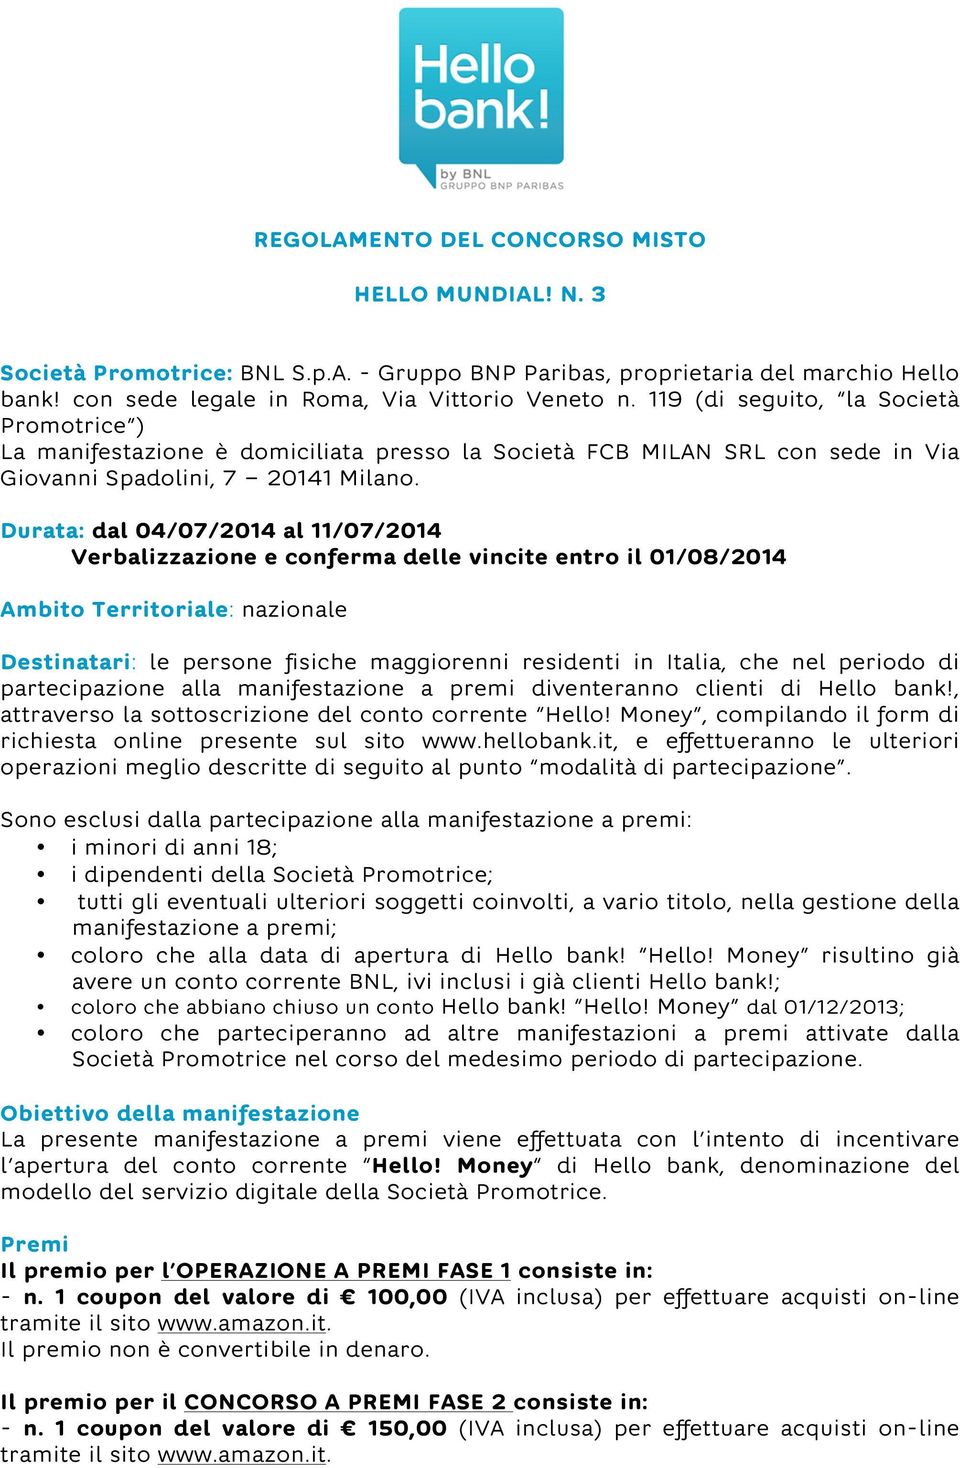 Durata: dal 04/07/2014 al 11/07/2014 Verbalizzazione e conferma delle vincite entro il 01/08/2014 Ambito Territoriale: nazionale Destinatari: le persone fisiche maggiorenni residenti in Italia, che